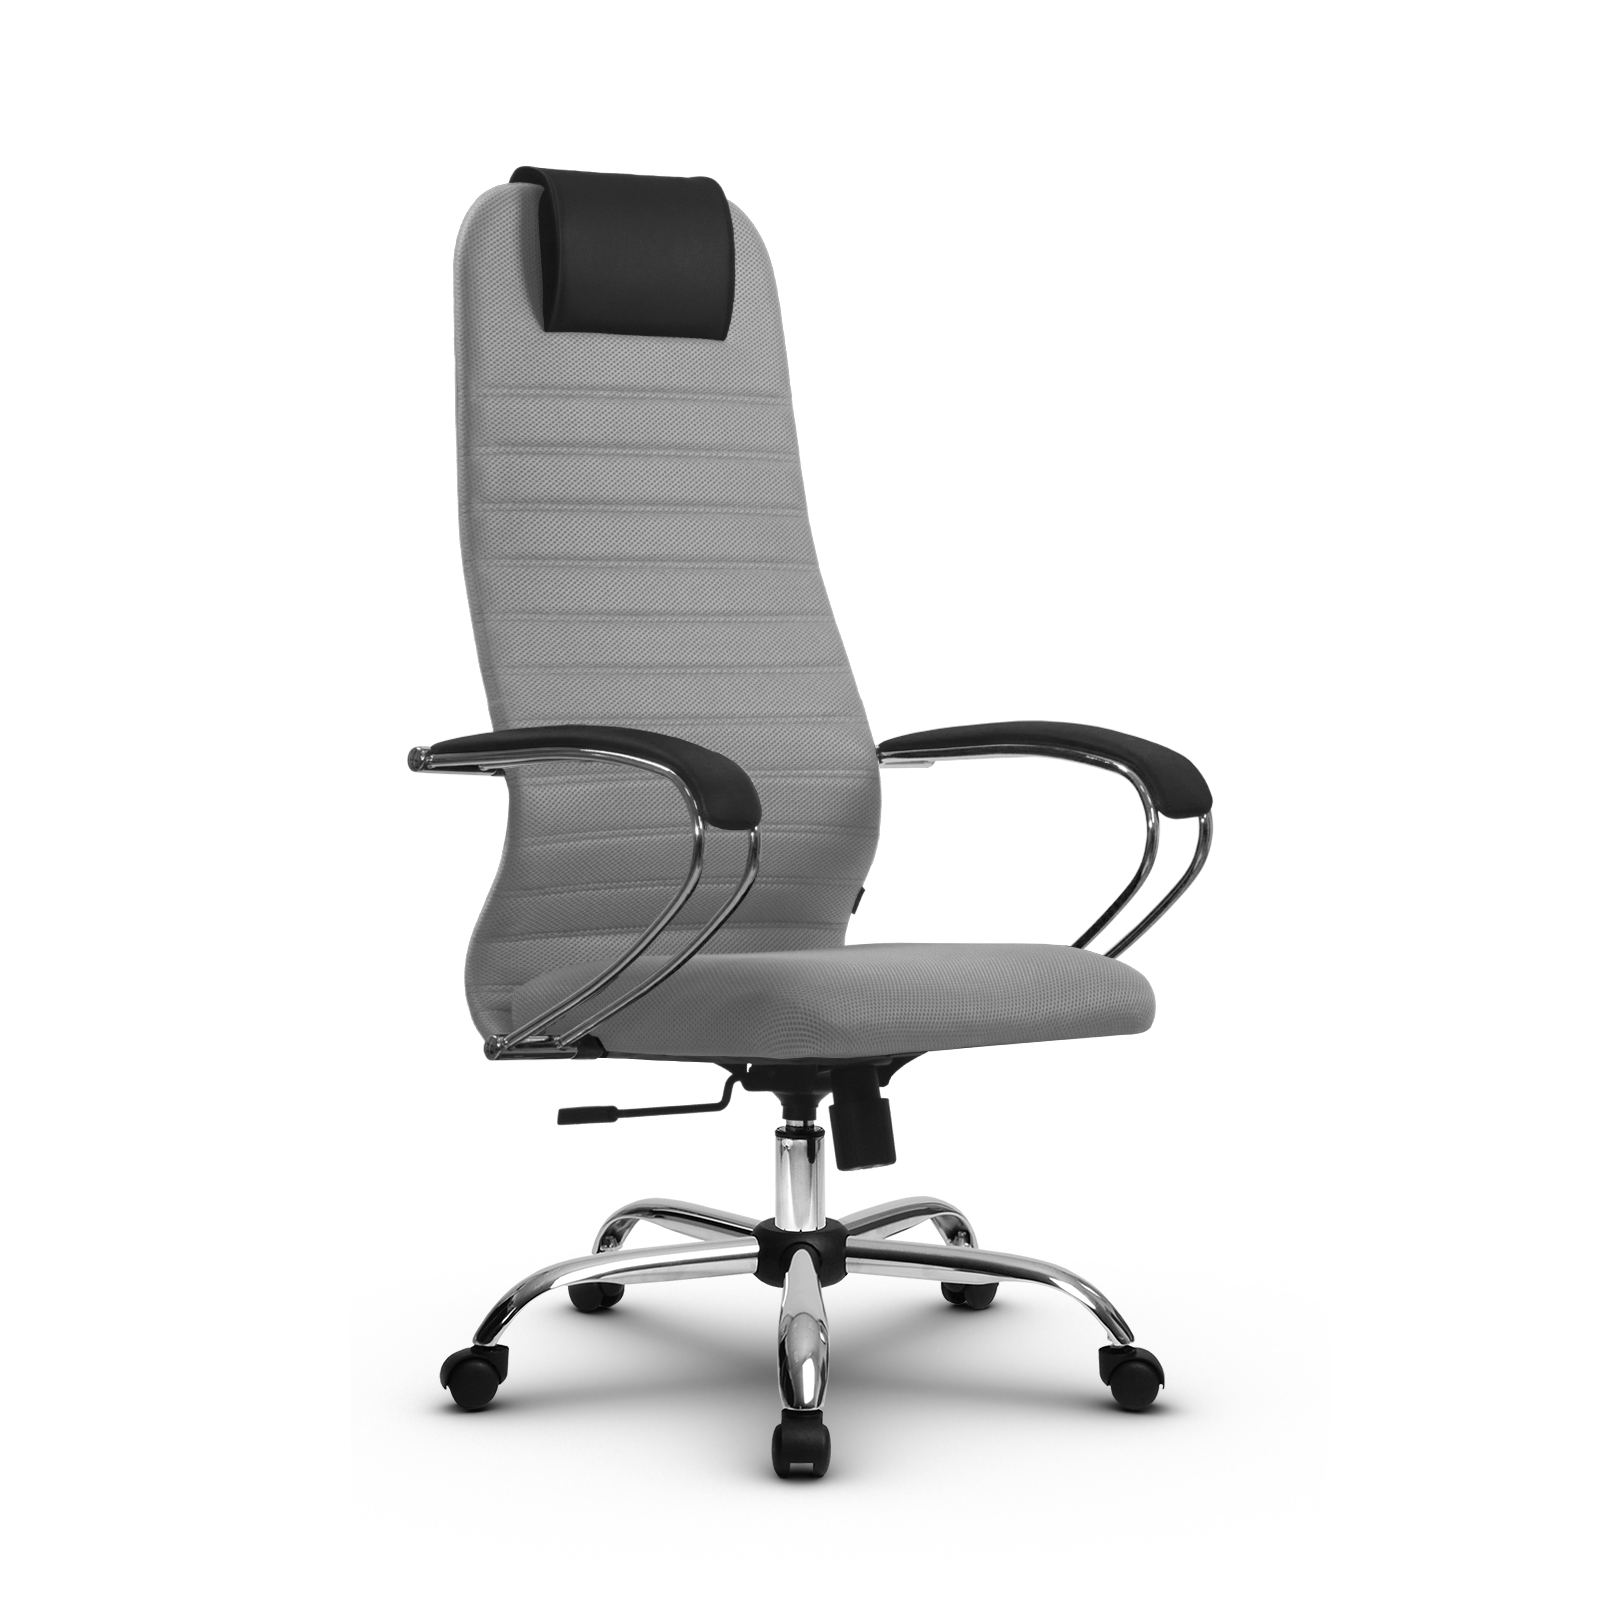 90488606 Офисное кресло Su z312467888 прочный сетчатый материал цвет светло-серый STLM-0248484 МЕТТА